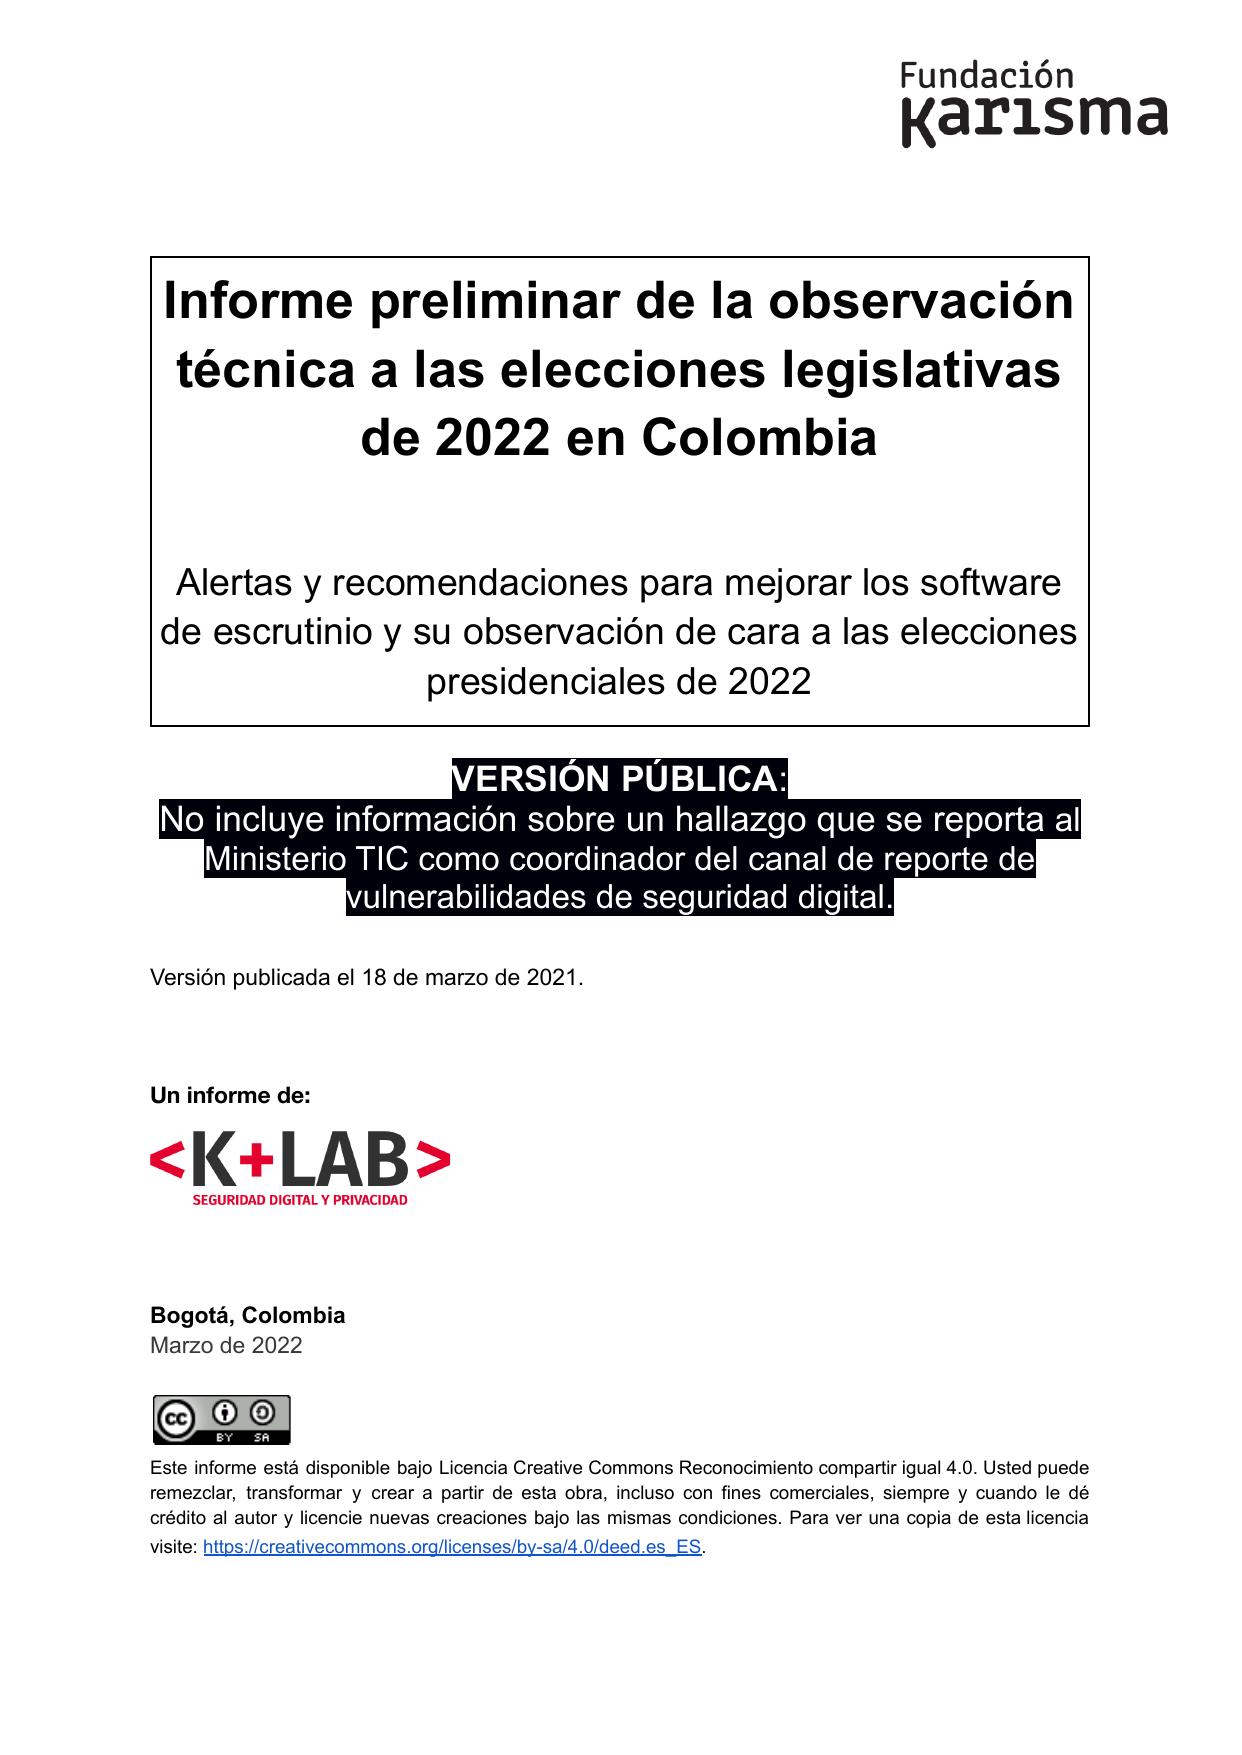 Informe preliminar de la observación técnica a las elecciones legislativas de 2022 en Colombia